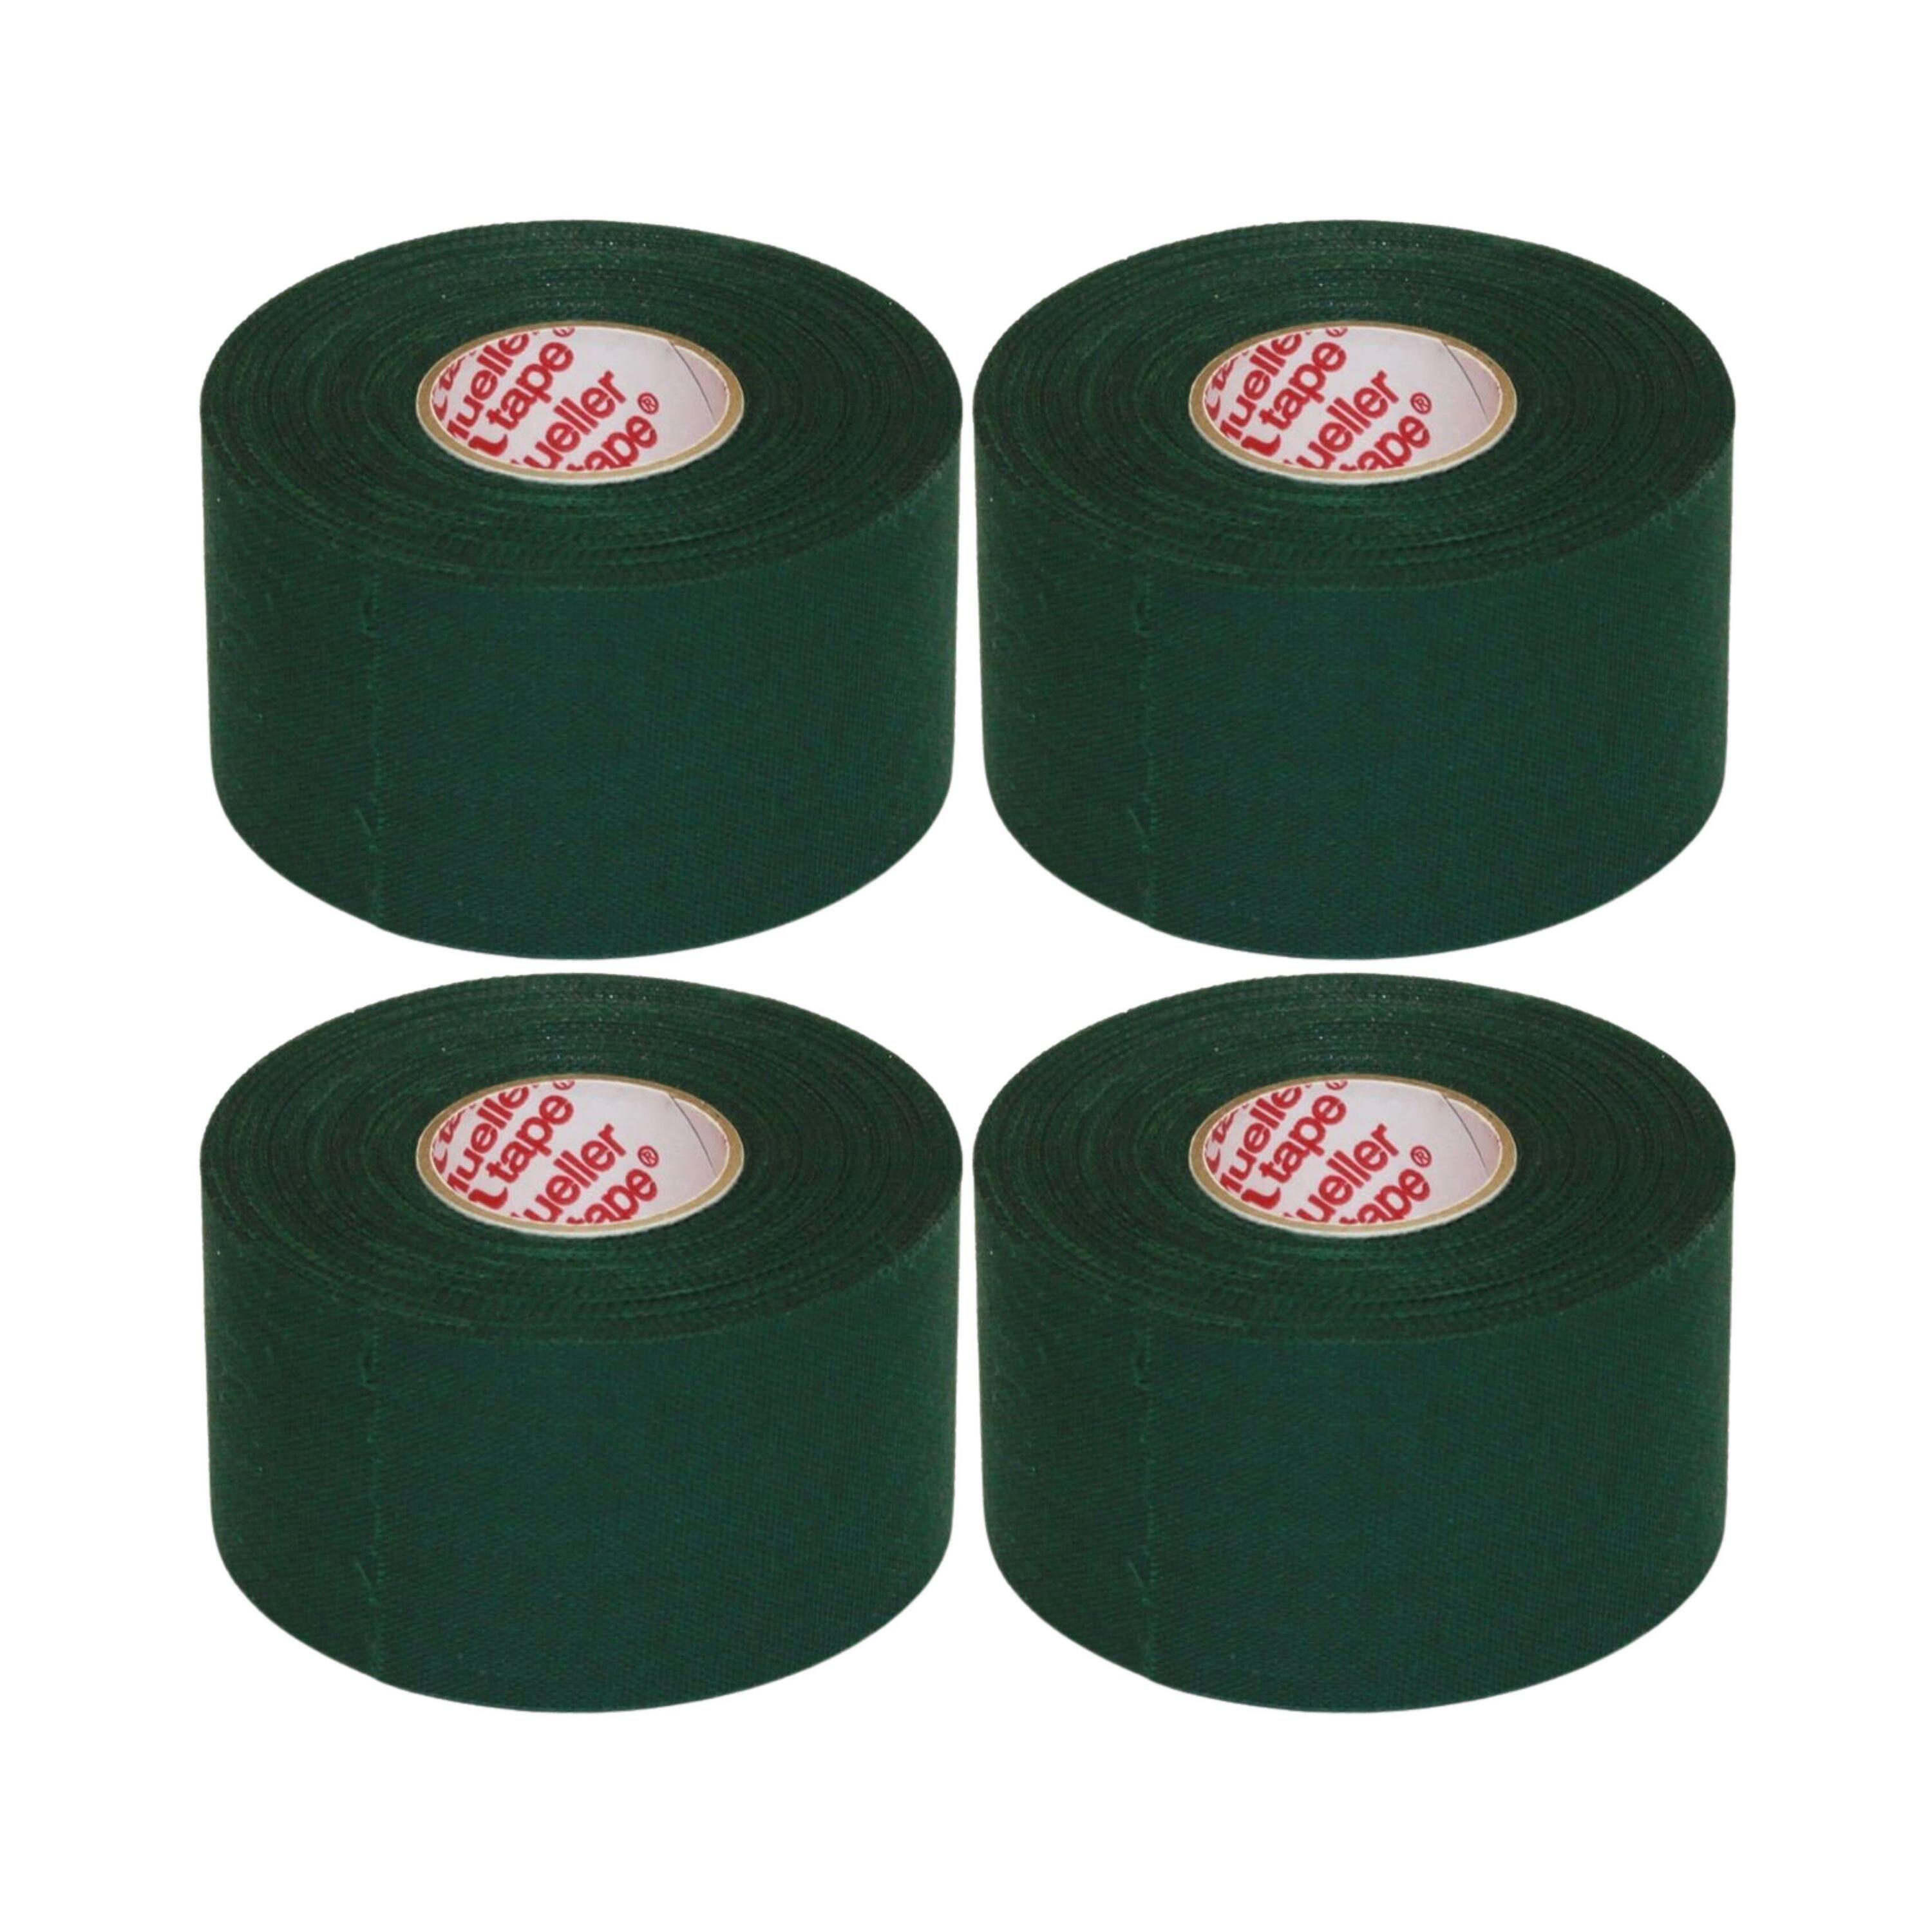 MUELLER Mueller M Tape Zinc Oxide 3.8cm X 9.14m (Pack of 4) - Green